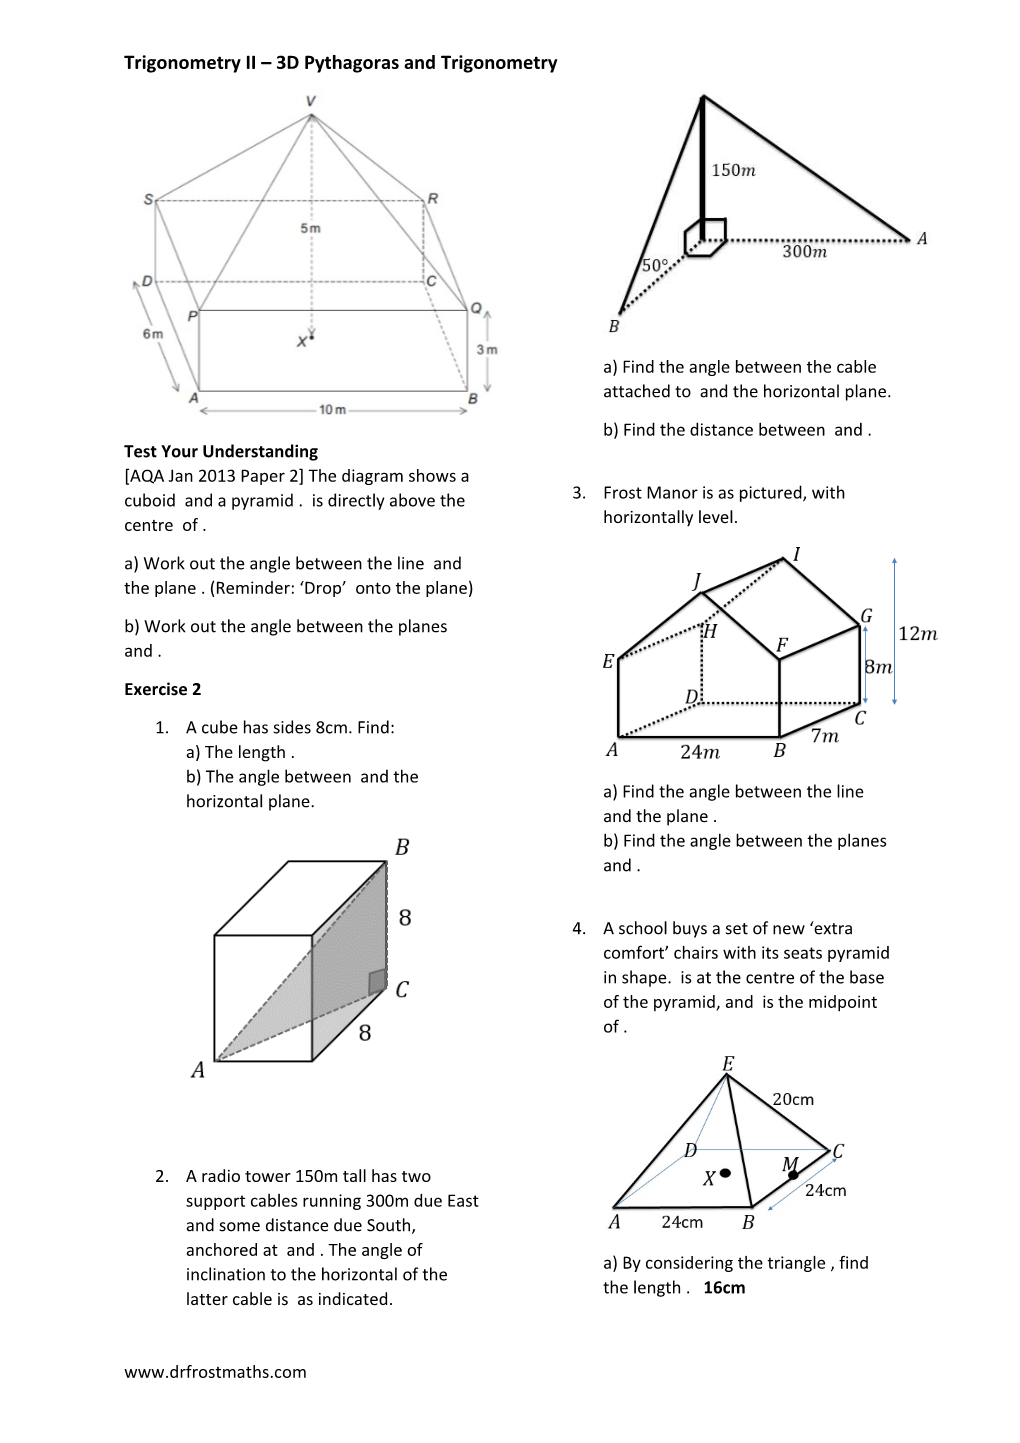 Trigonometry II 3D Pythagoras and Trigonometry